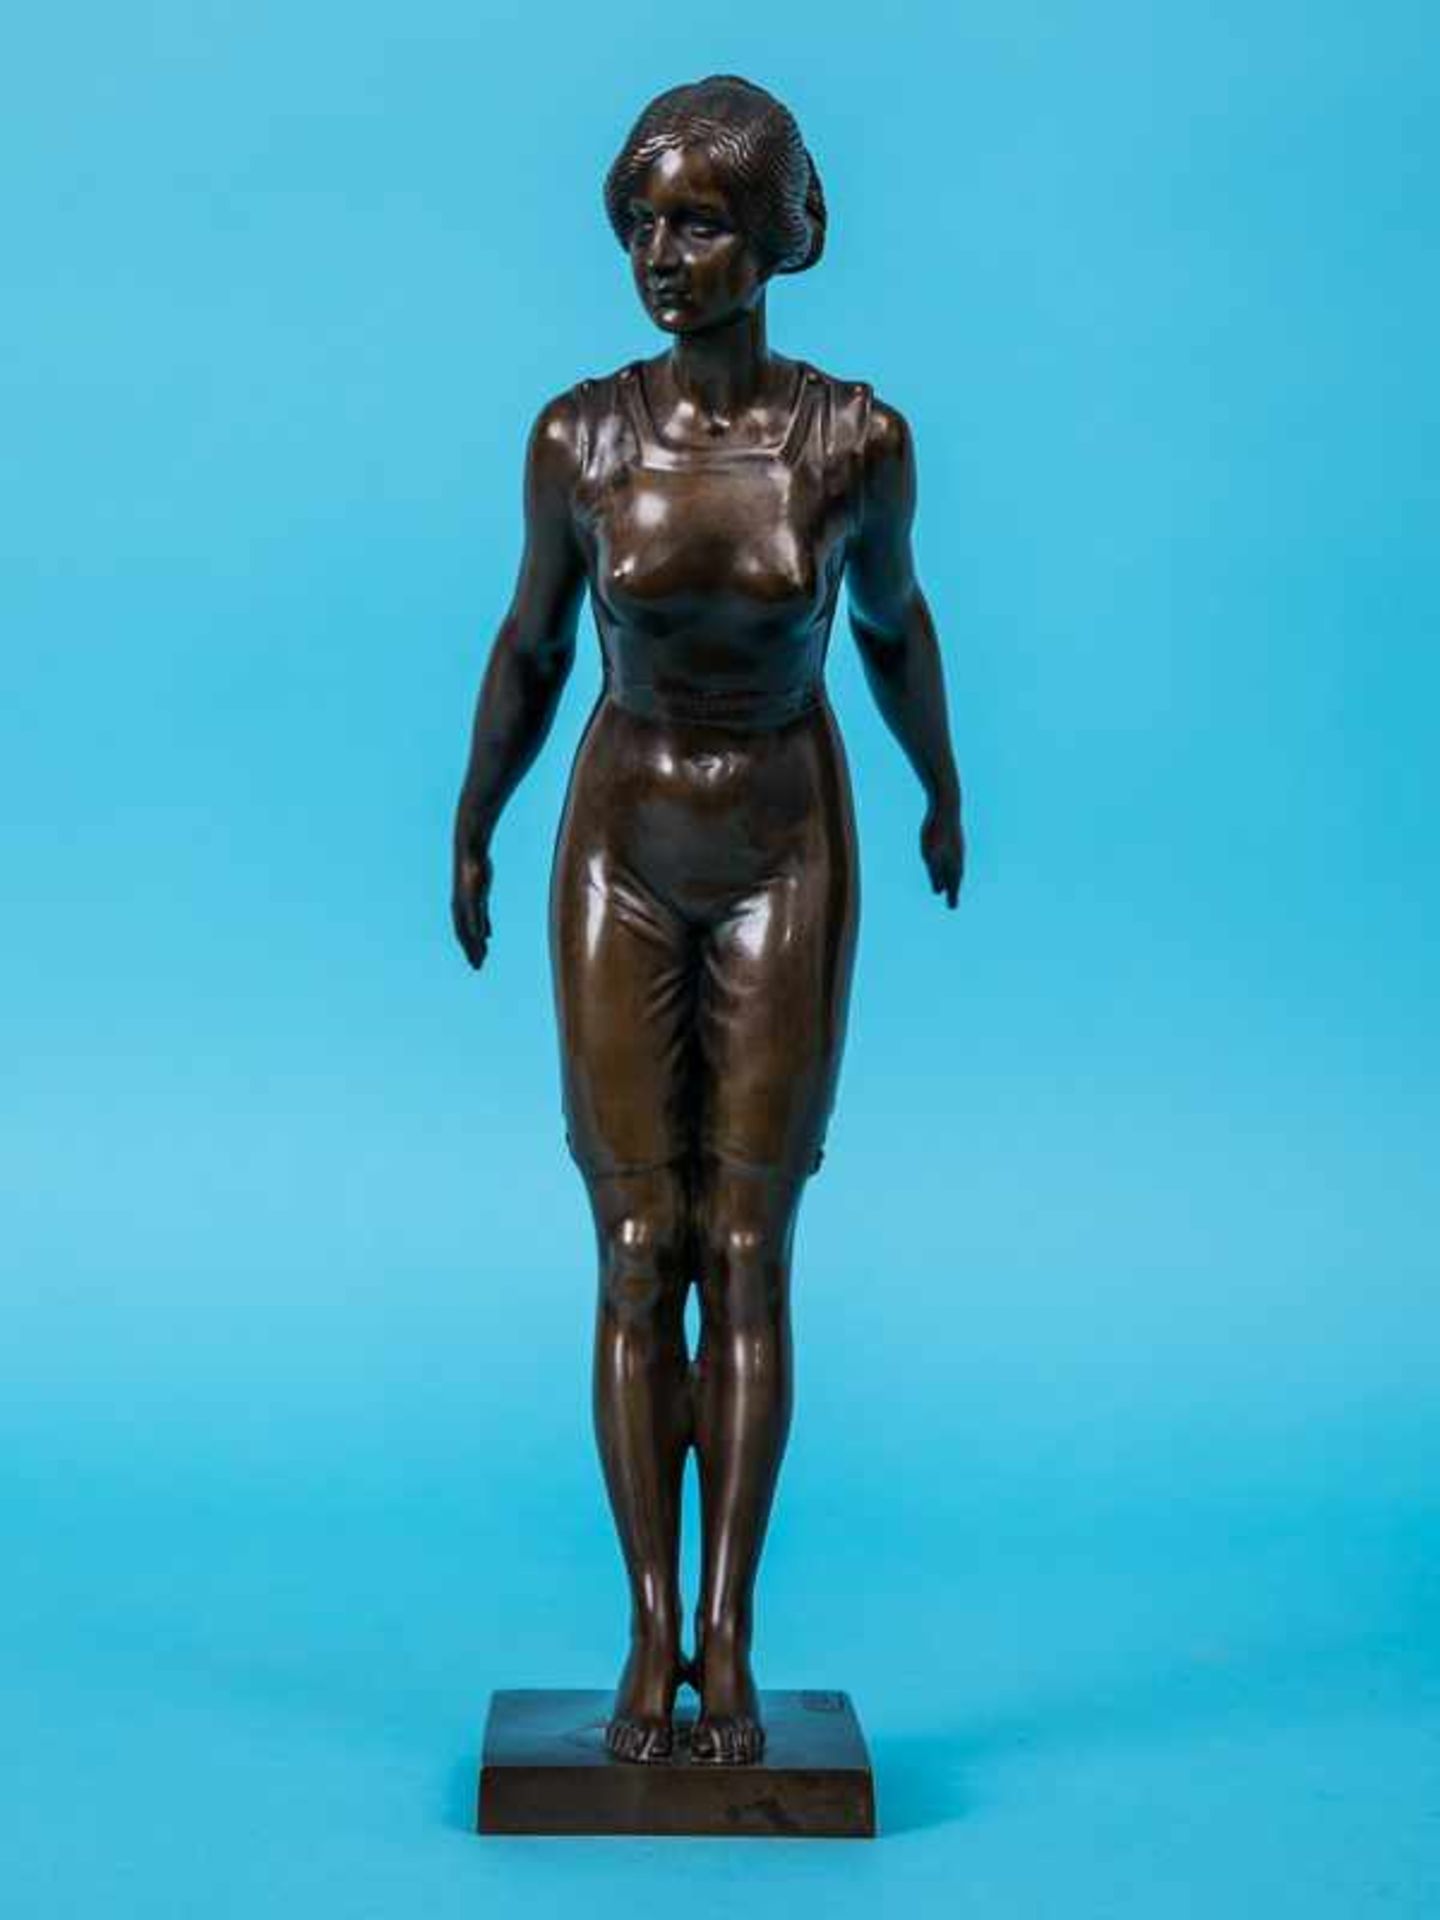 Leisek, Georg (1869 - 1936). Figurenplastik einer Schwimmerin im Badeanzug, kurz vor dem Absprung